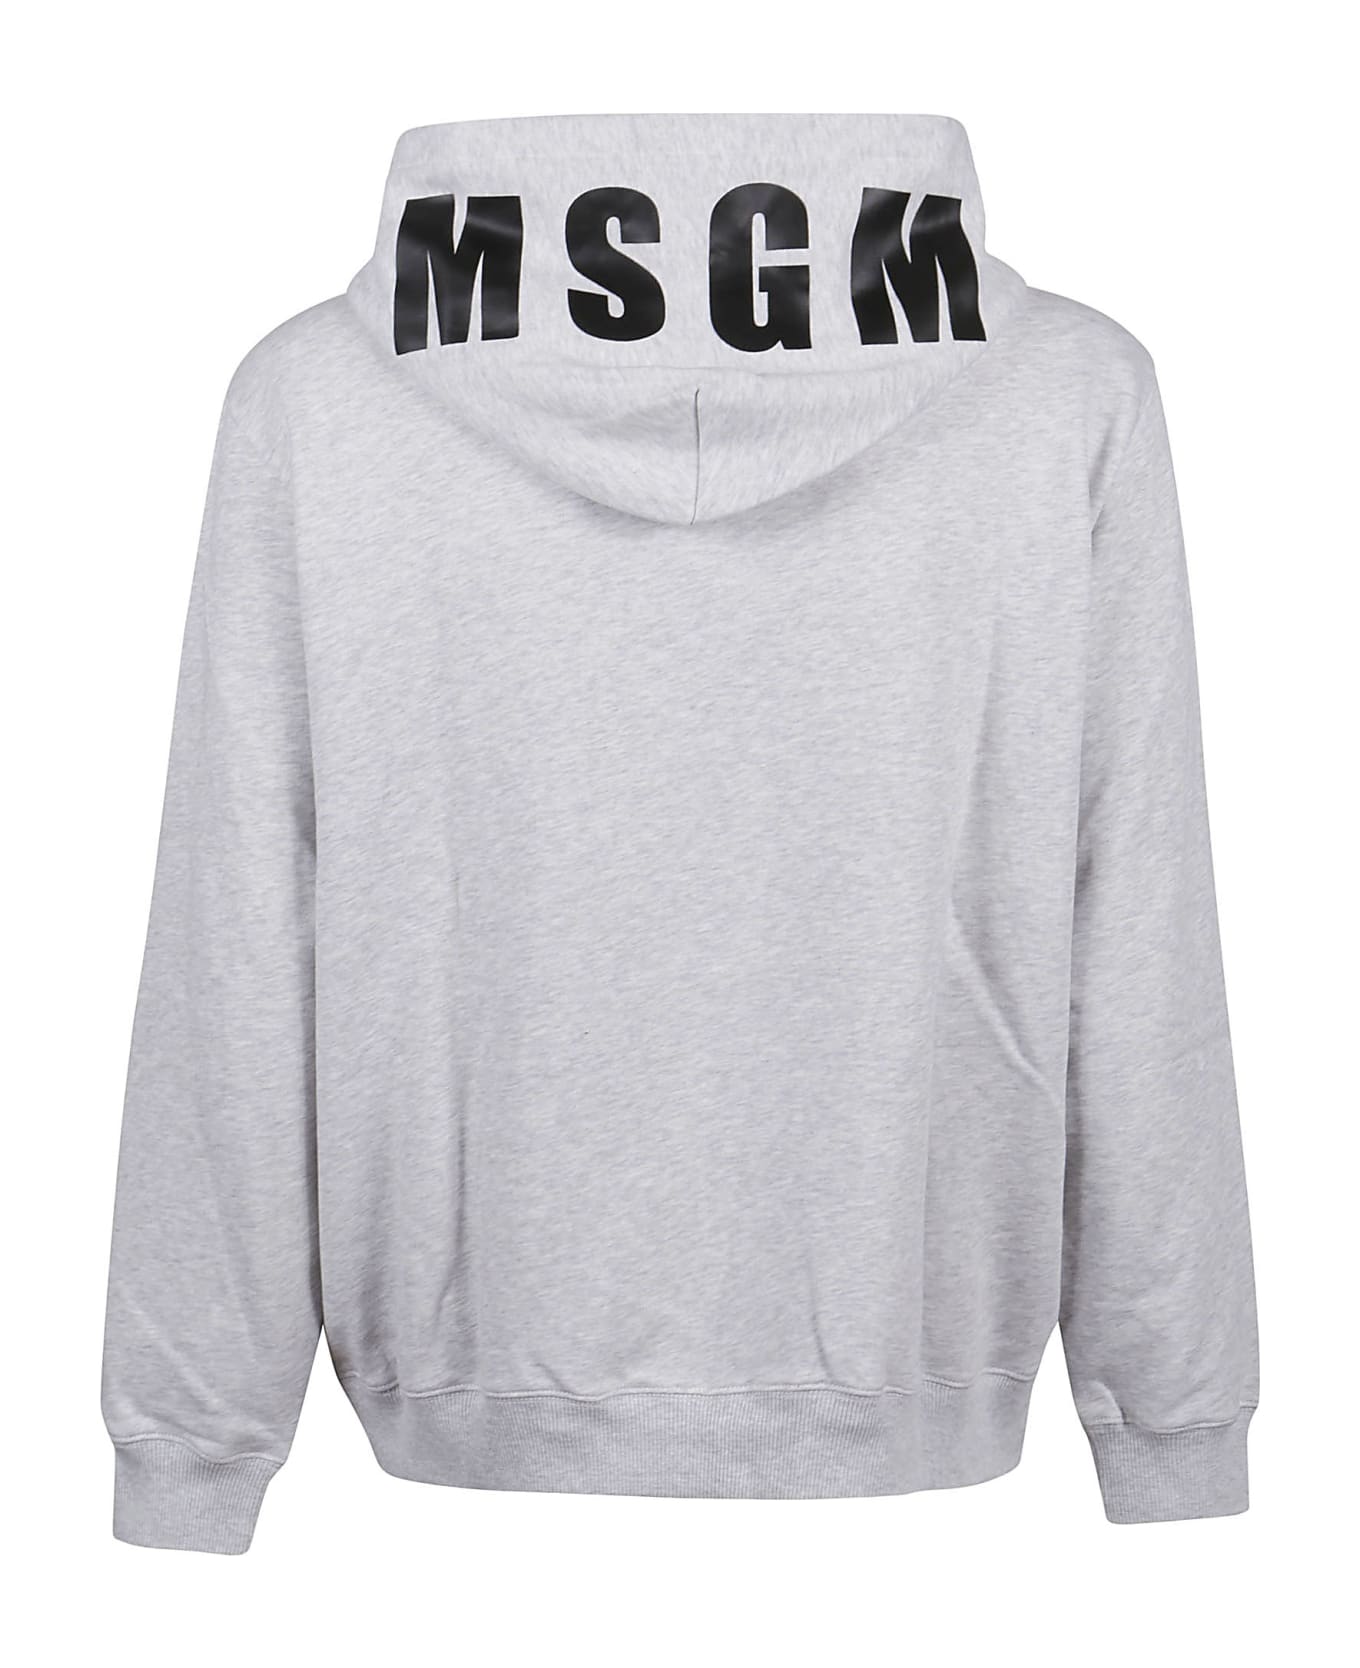 MSGM Oversized Maxilogo Sweatshirt - Light Grey Melange